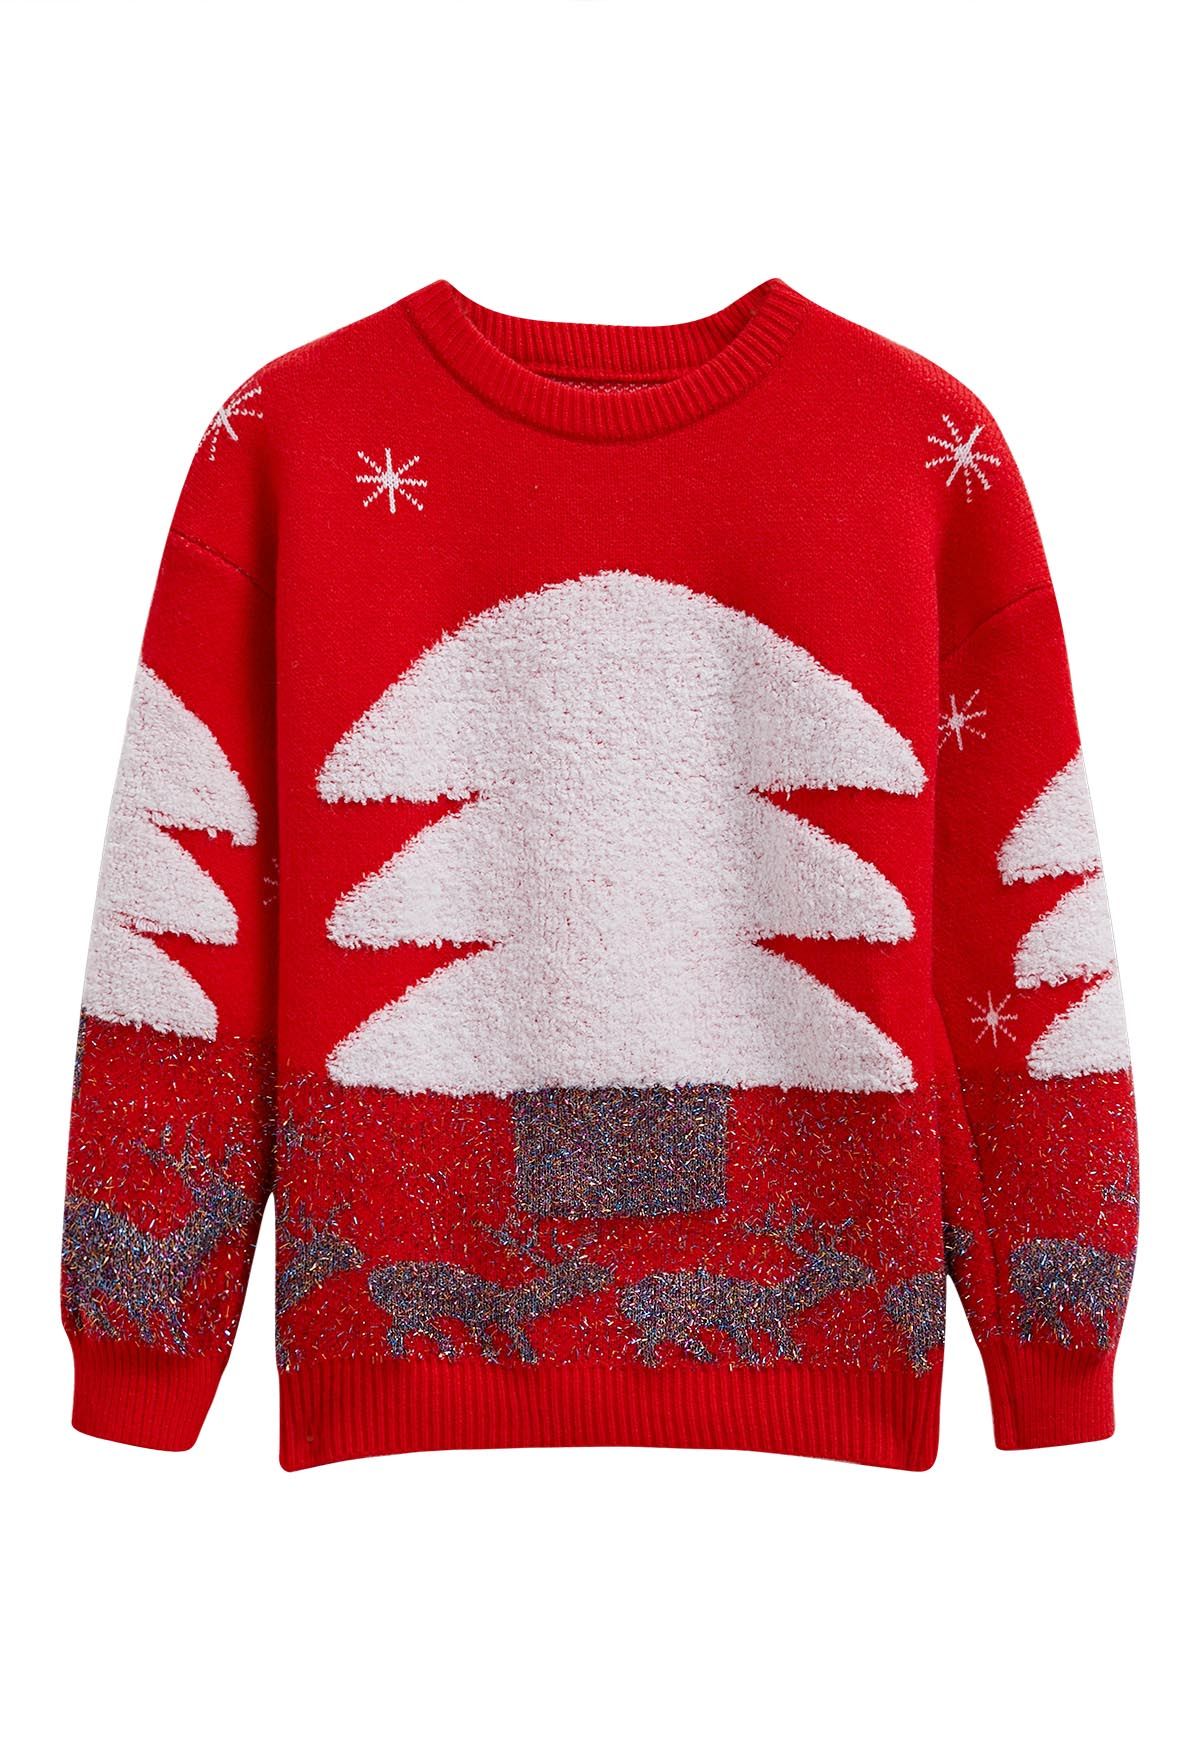 Suéter de punto jacquard con alce y árbol de Navidad alegre en rojo